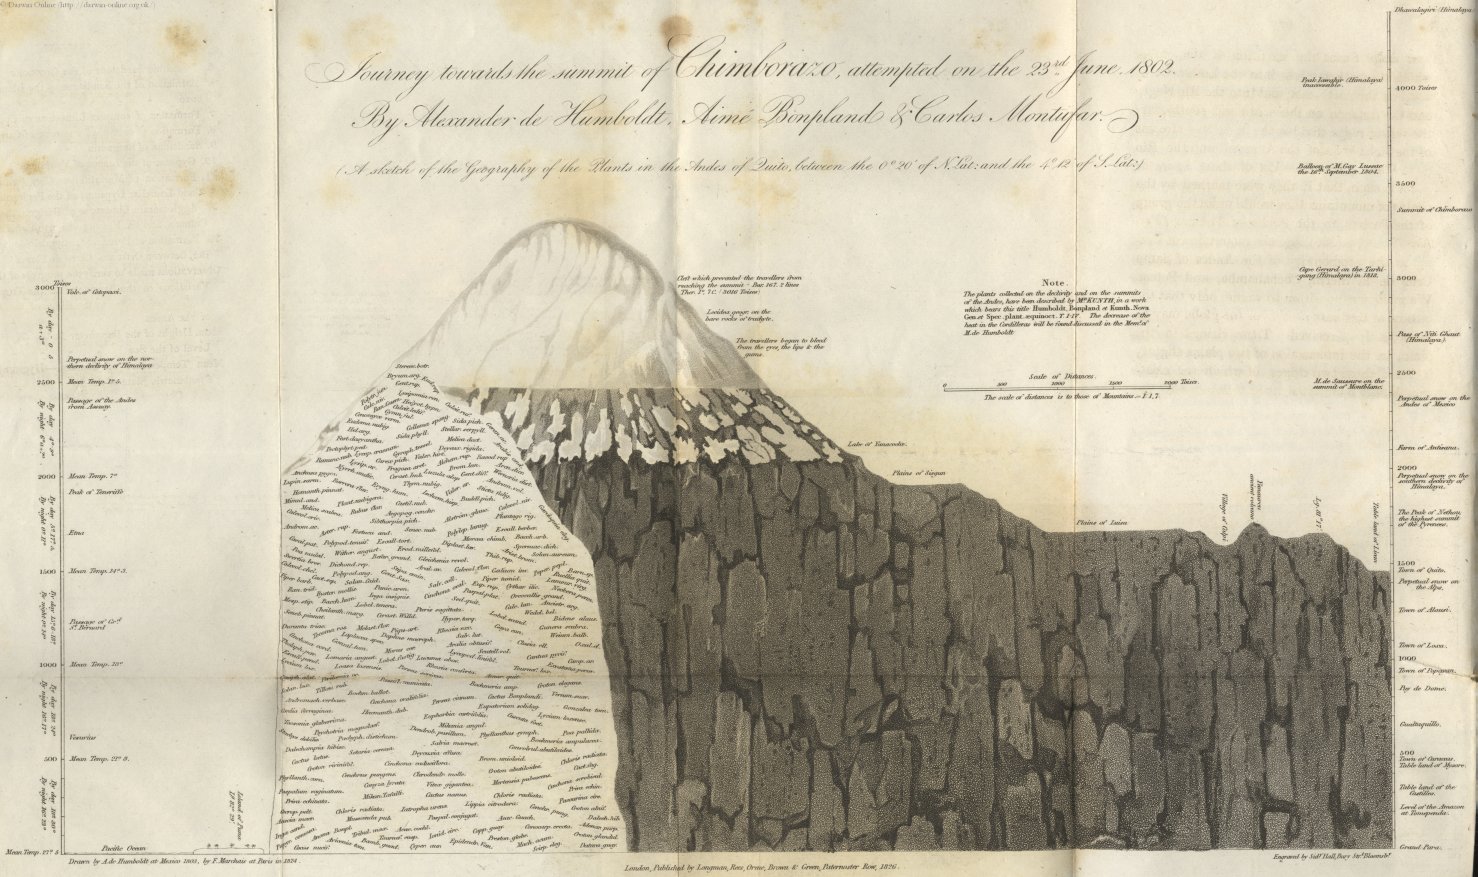 Иллюстрация Гумбольдта к его знаменитому восхождению на гору Чимборасо в Андах в 1802 году.